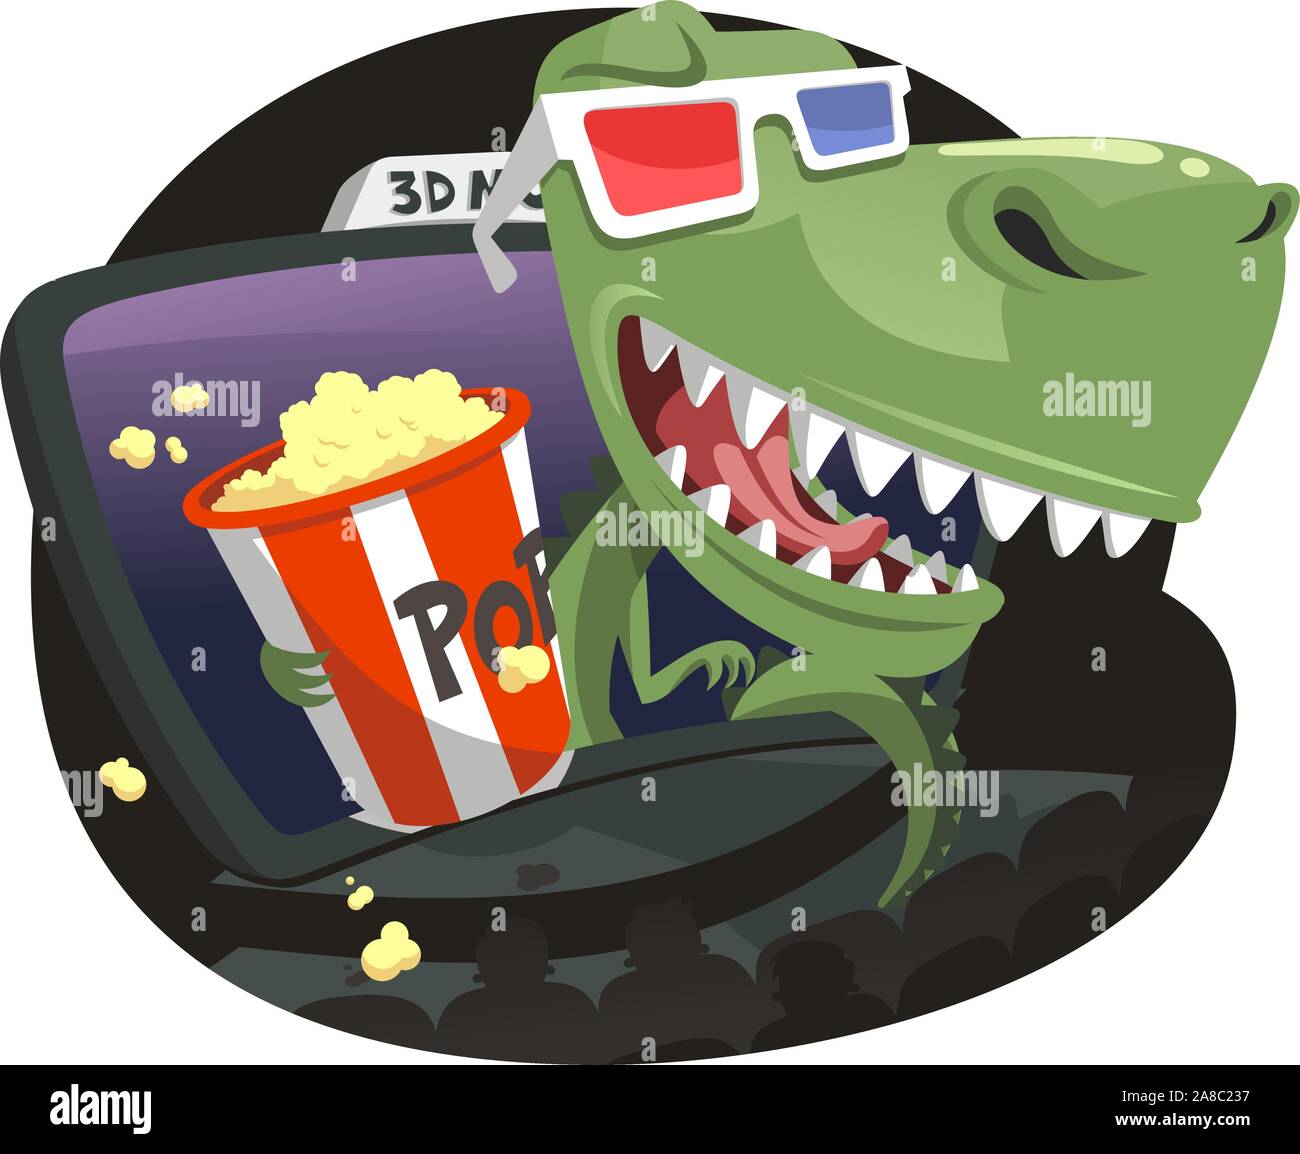 Dinosaures 3D de sauter hors de l'écran dans un cinéma, 3D avec des lunettes rouge et bleu eating pop corn. Vector illustration cartoon. Illustration de Vecteur